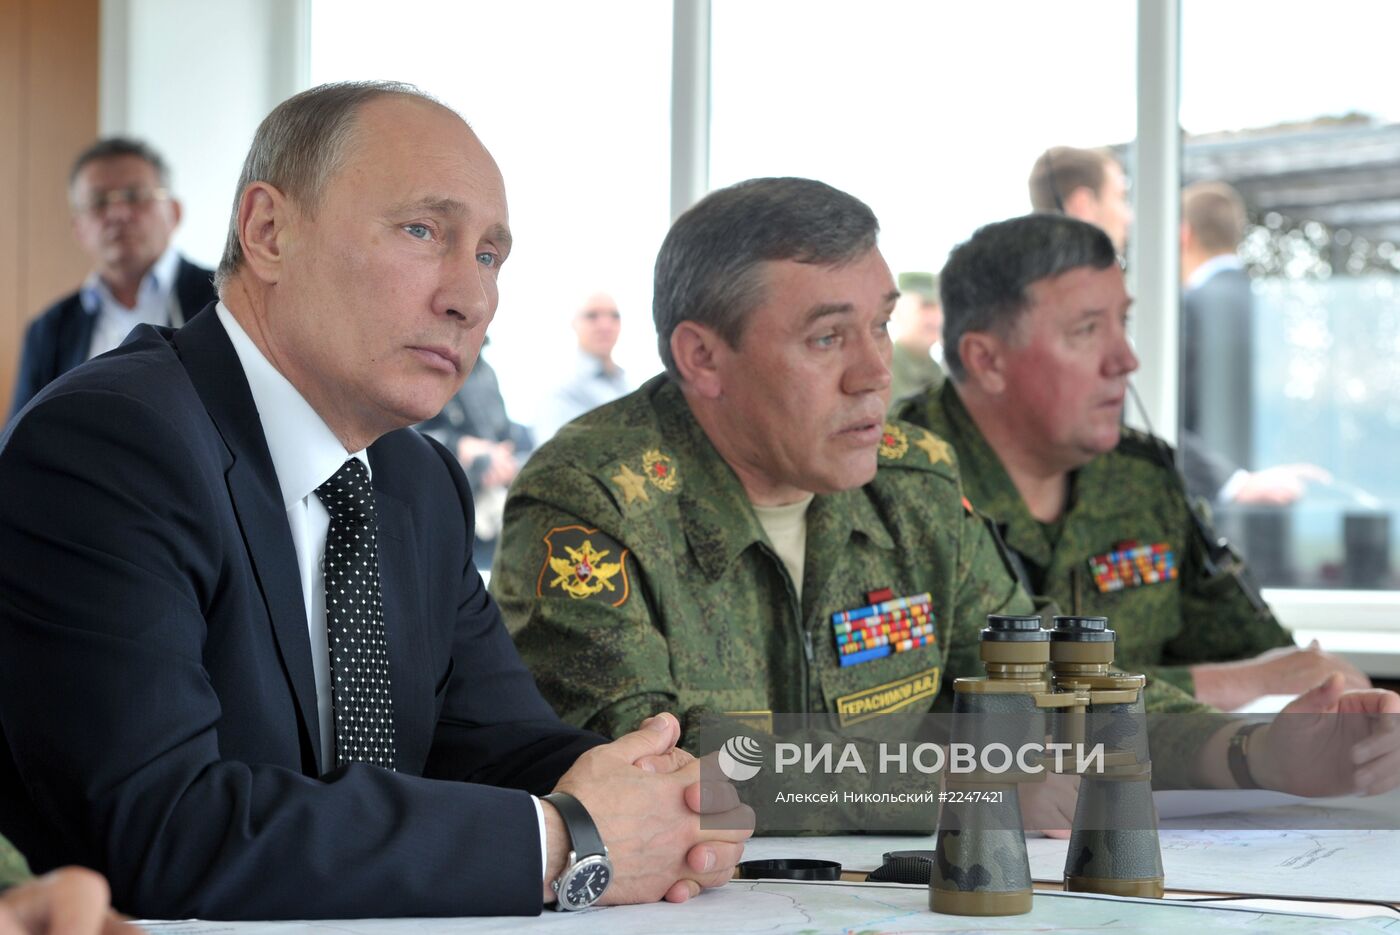 В.Путин наблюдал за военными ученииями на забайкальском полигоне